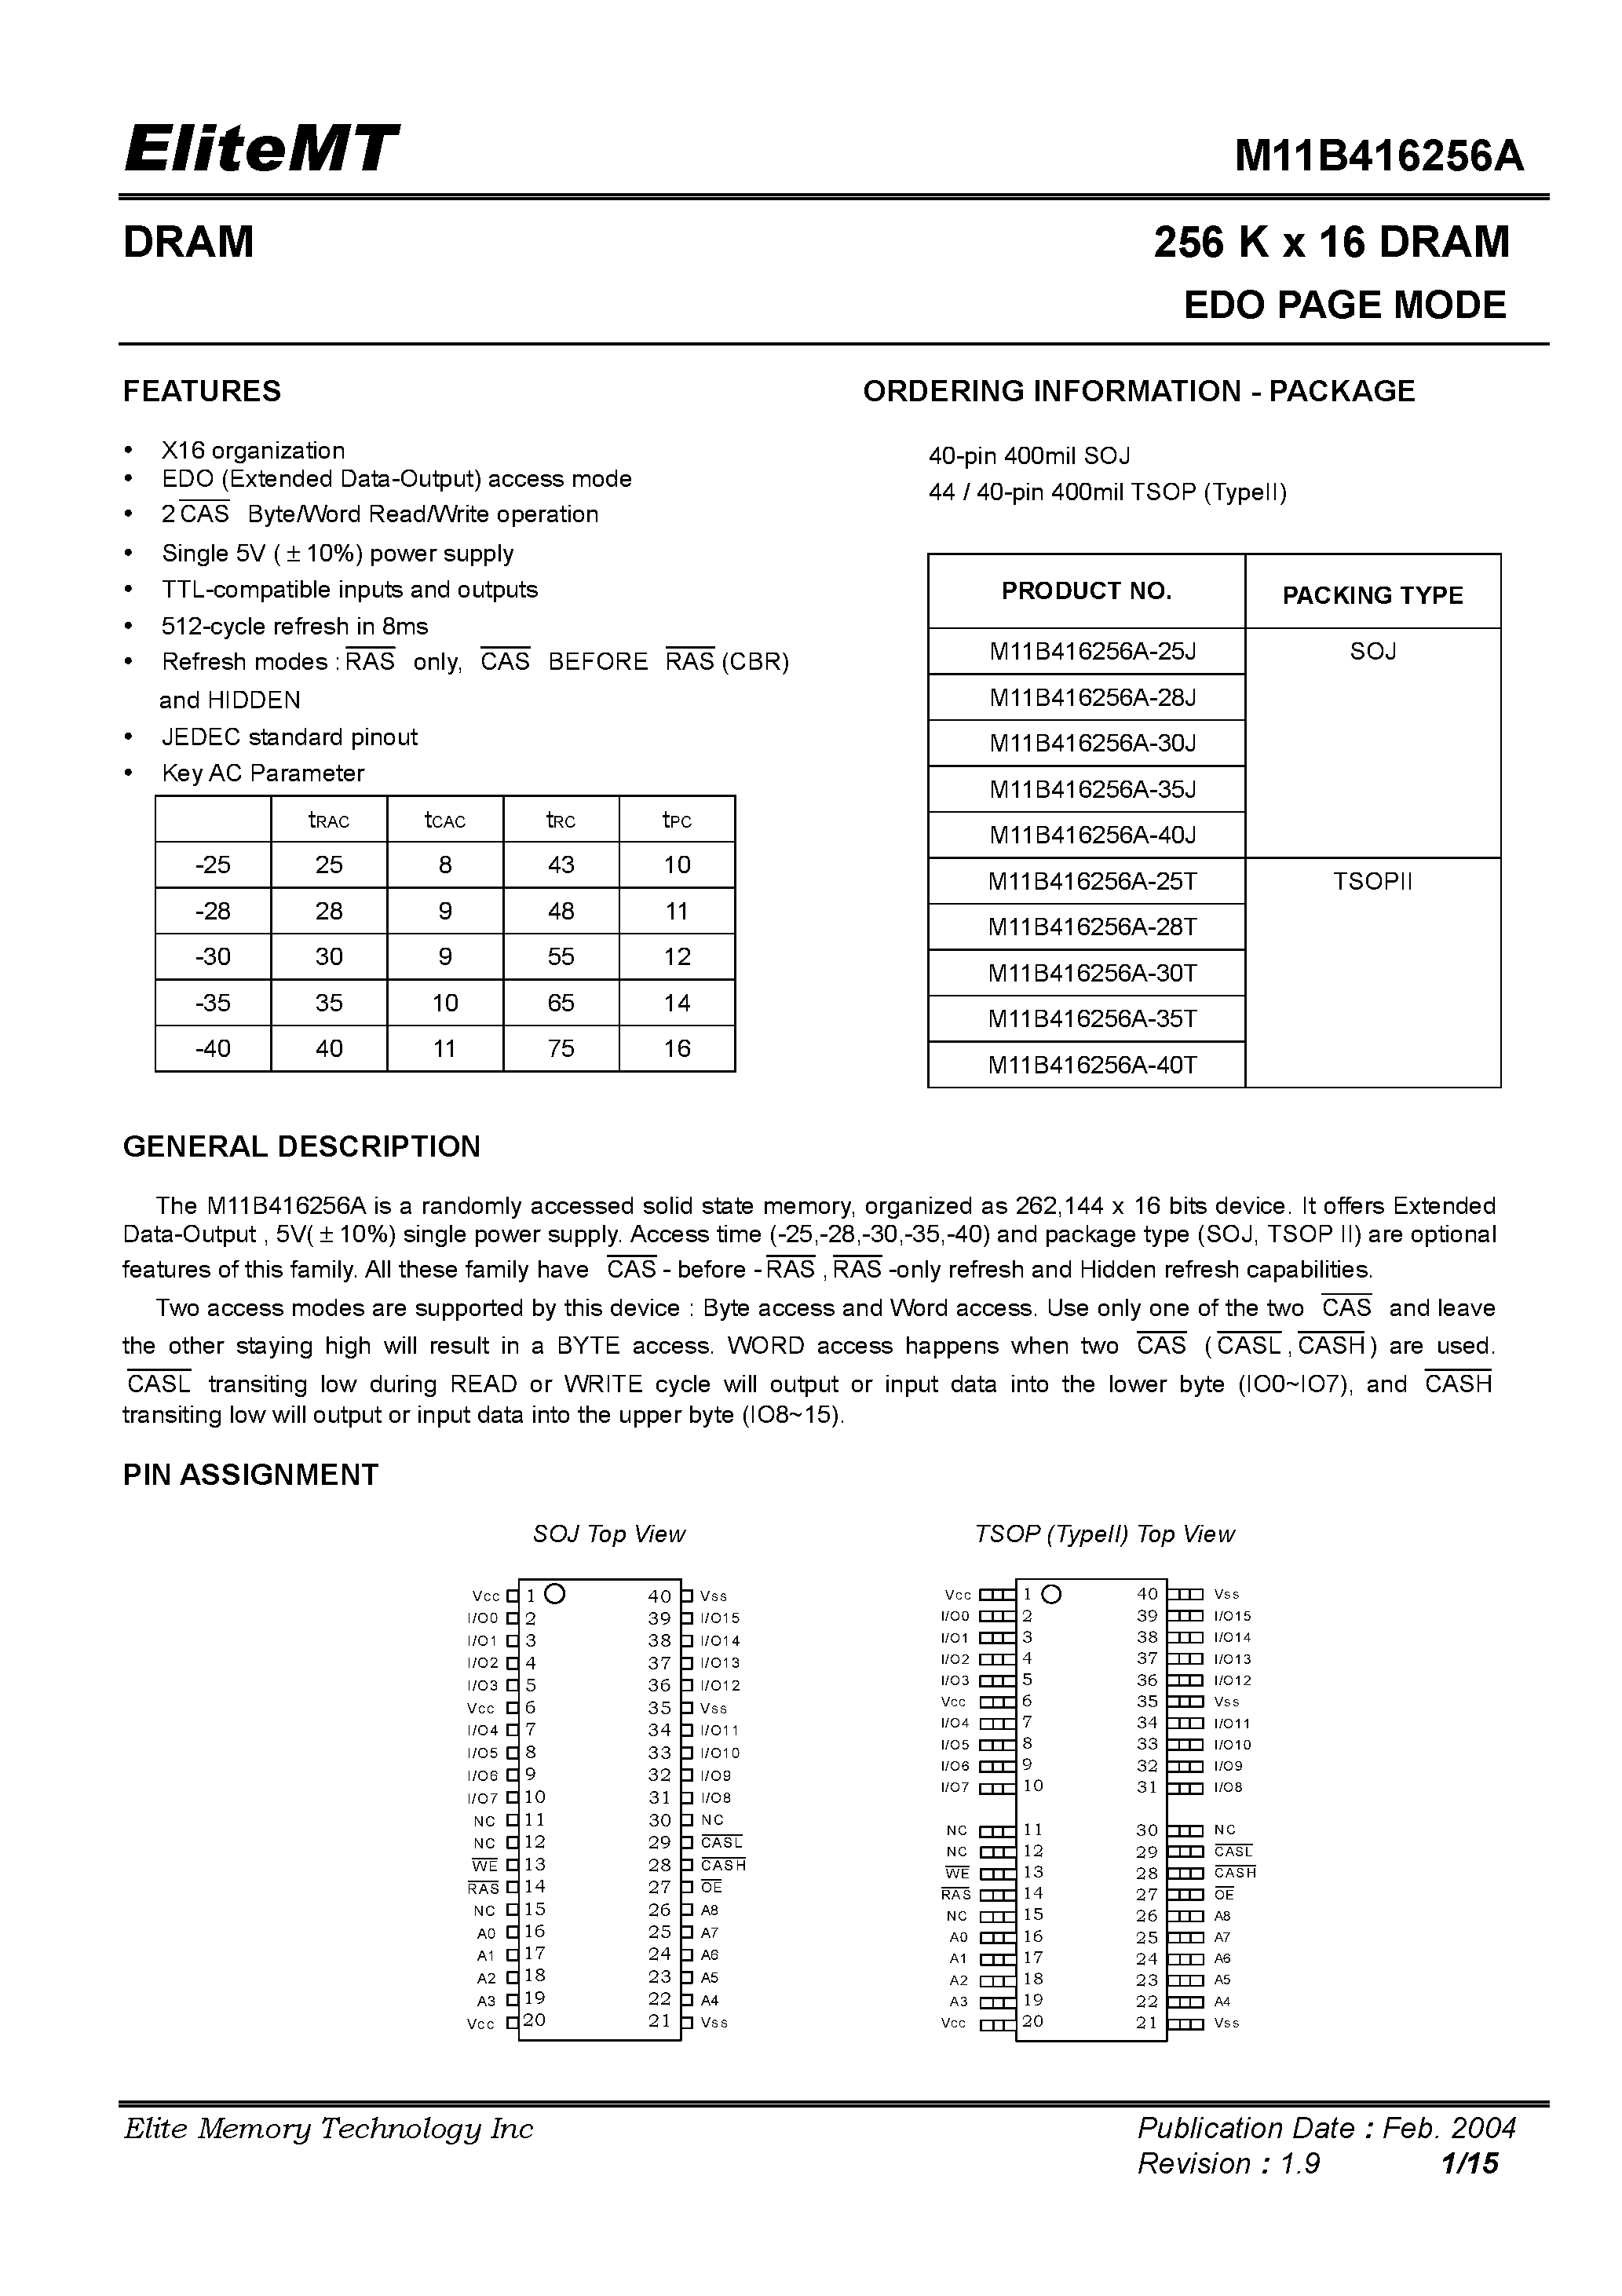 Datasheet M11B416256A-25J - 256 K x 16 DRAM EDO PAGE MODE page 1